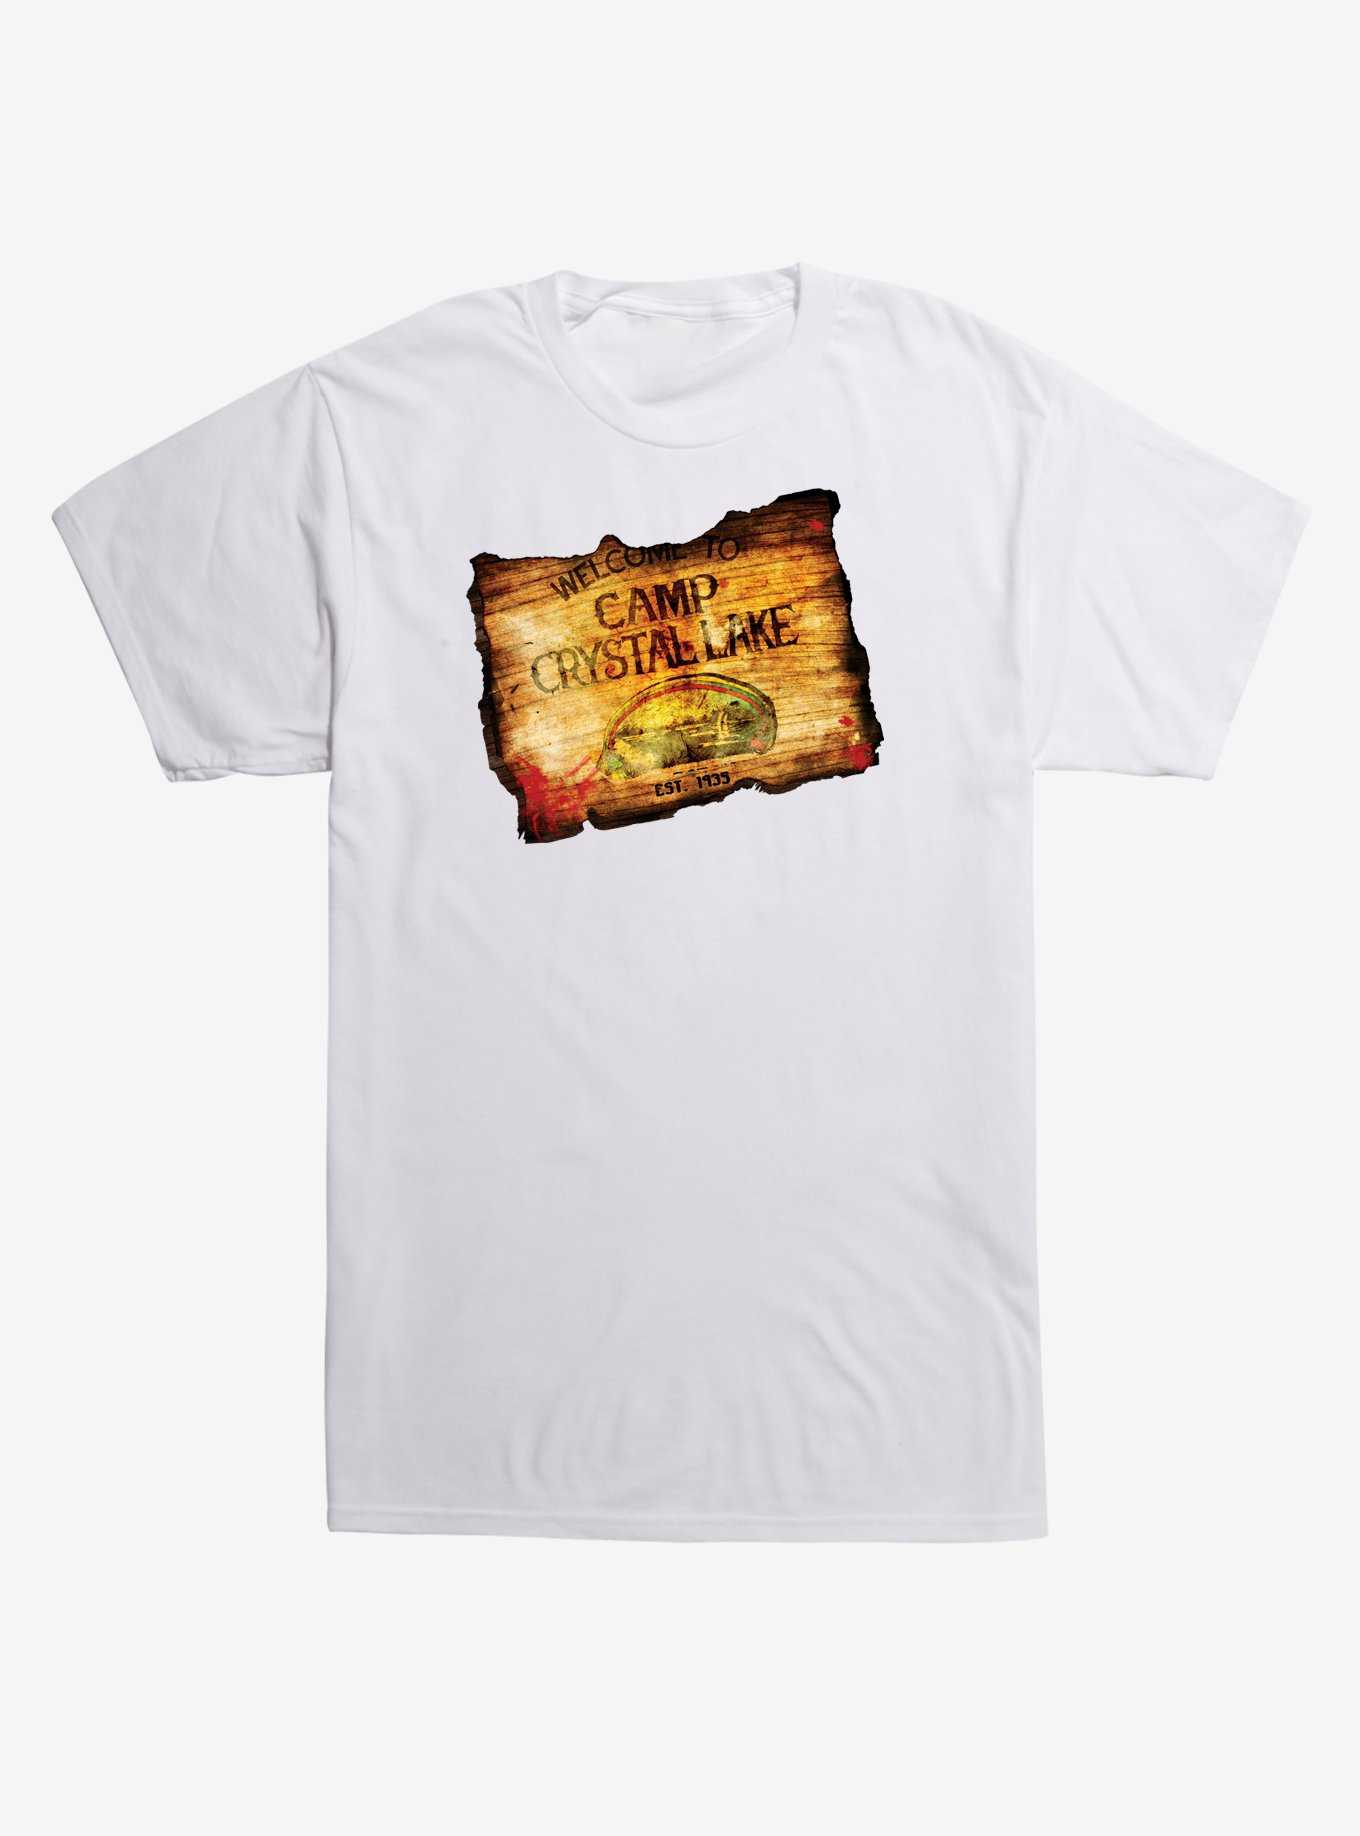 Friday the 13th Crystal Lake T-Shirt, , hi-res